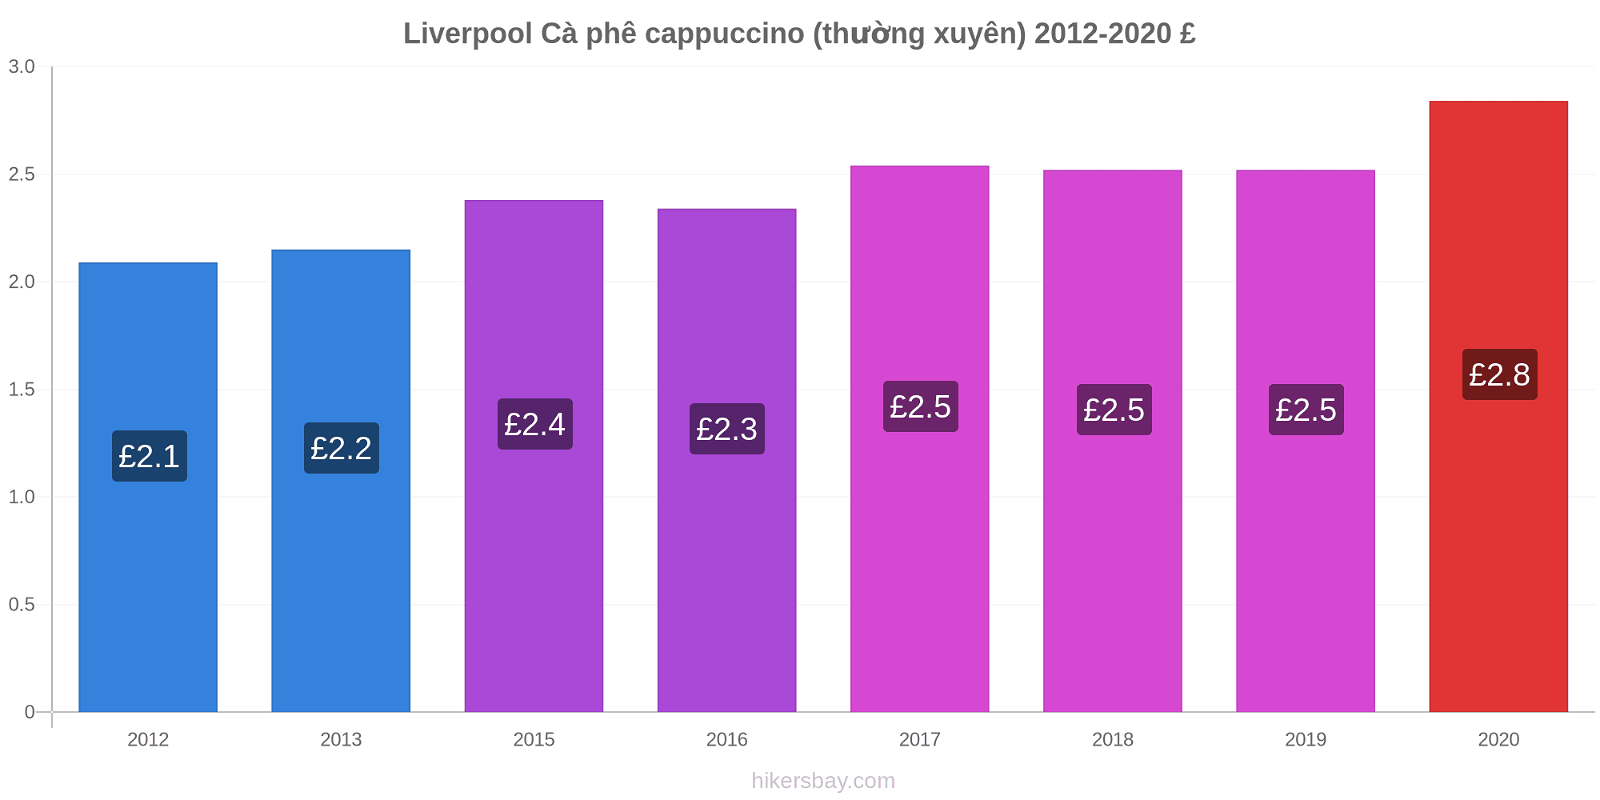 Liverpool thay đổi giá Cà phê cappuccino (thường xuyên) hikersbay.com